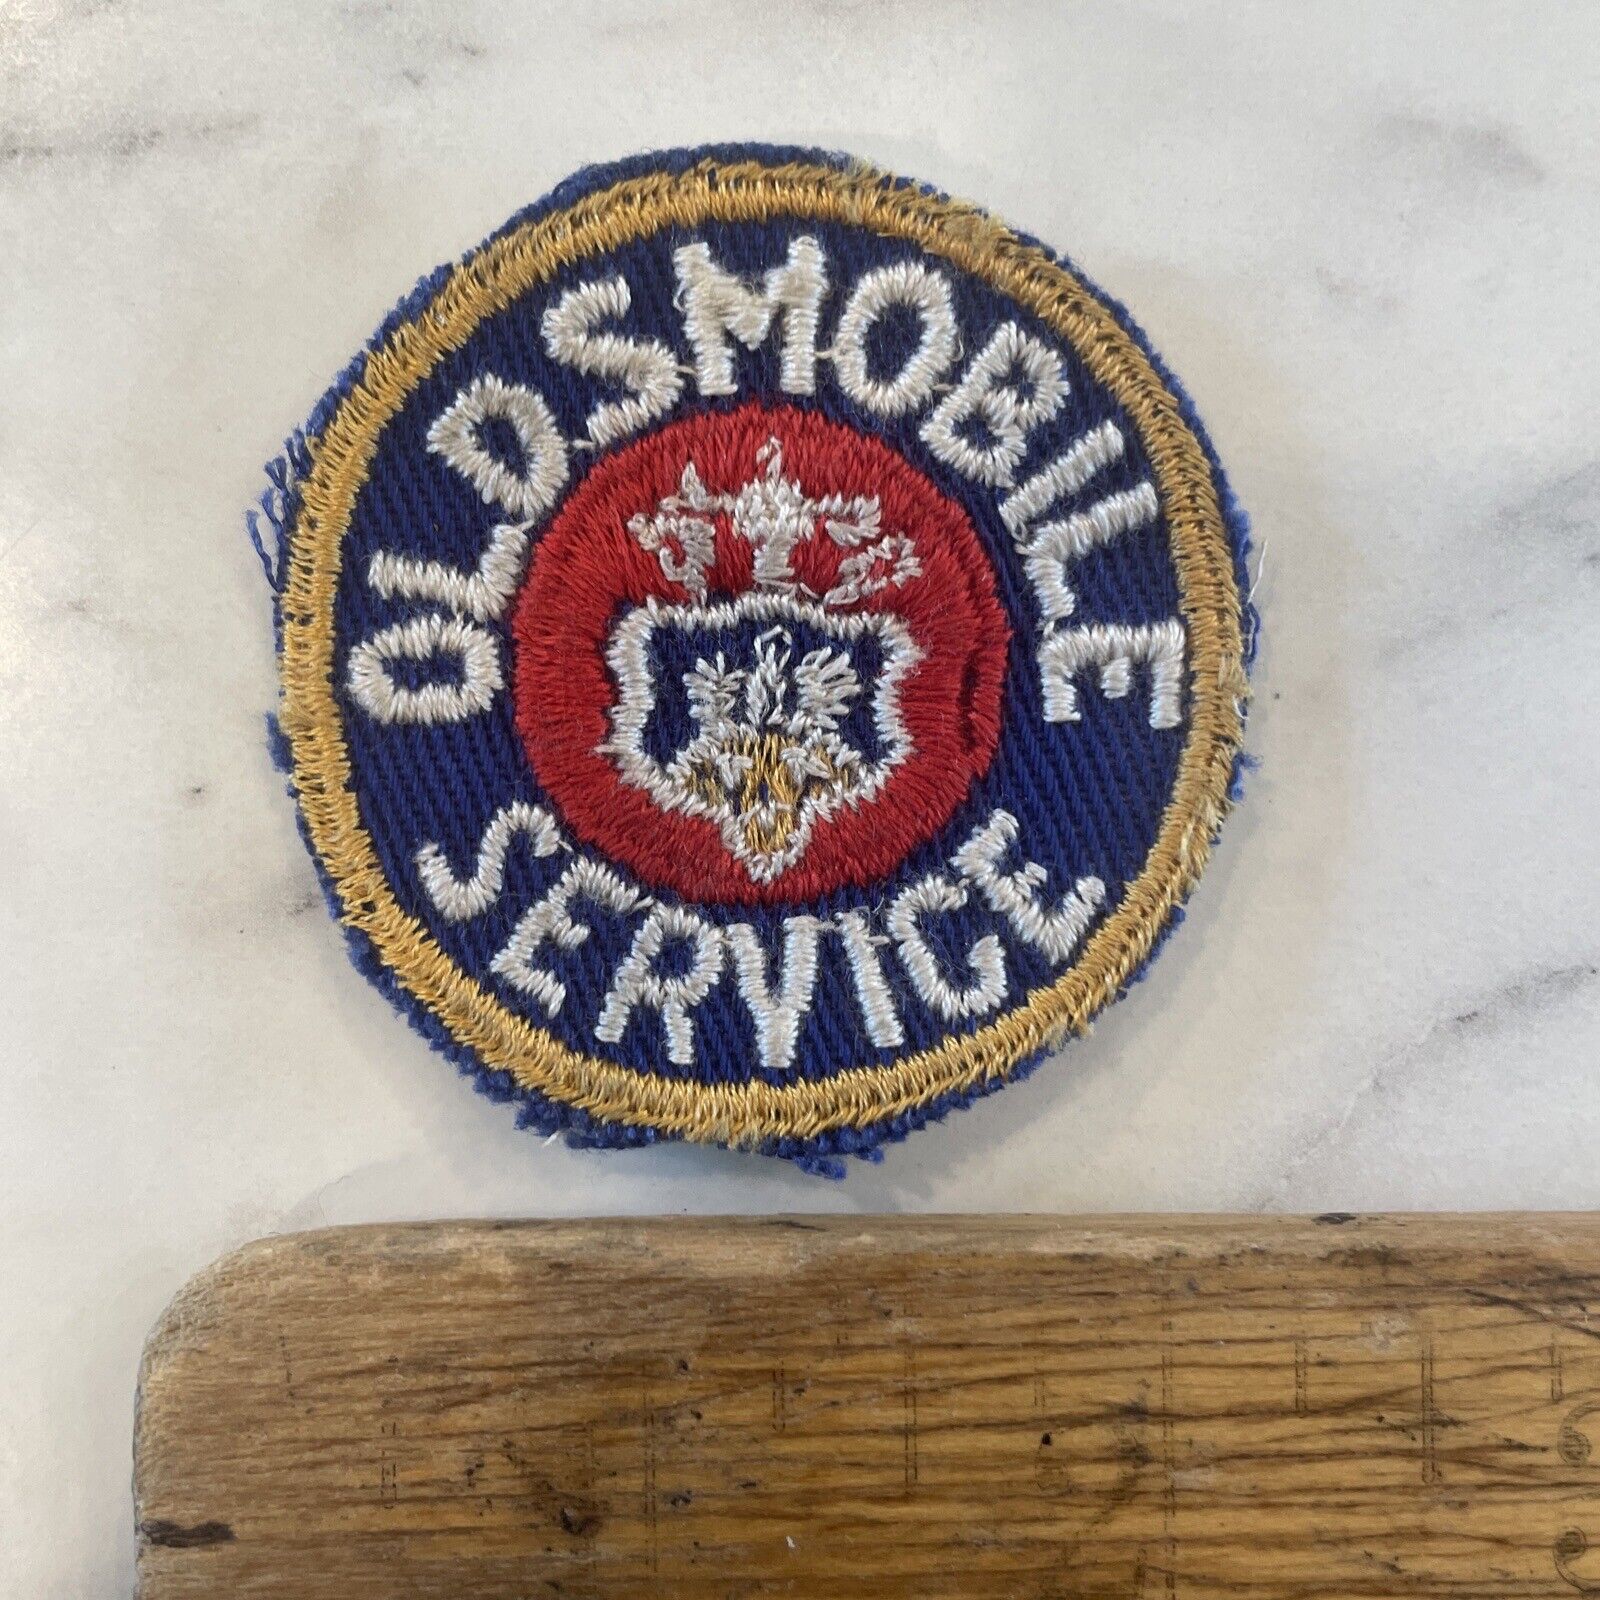 Vintage Oldsmobile Automotive Service Parts Dealer Uniform Jacket Patch 2”